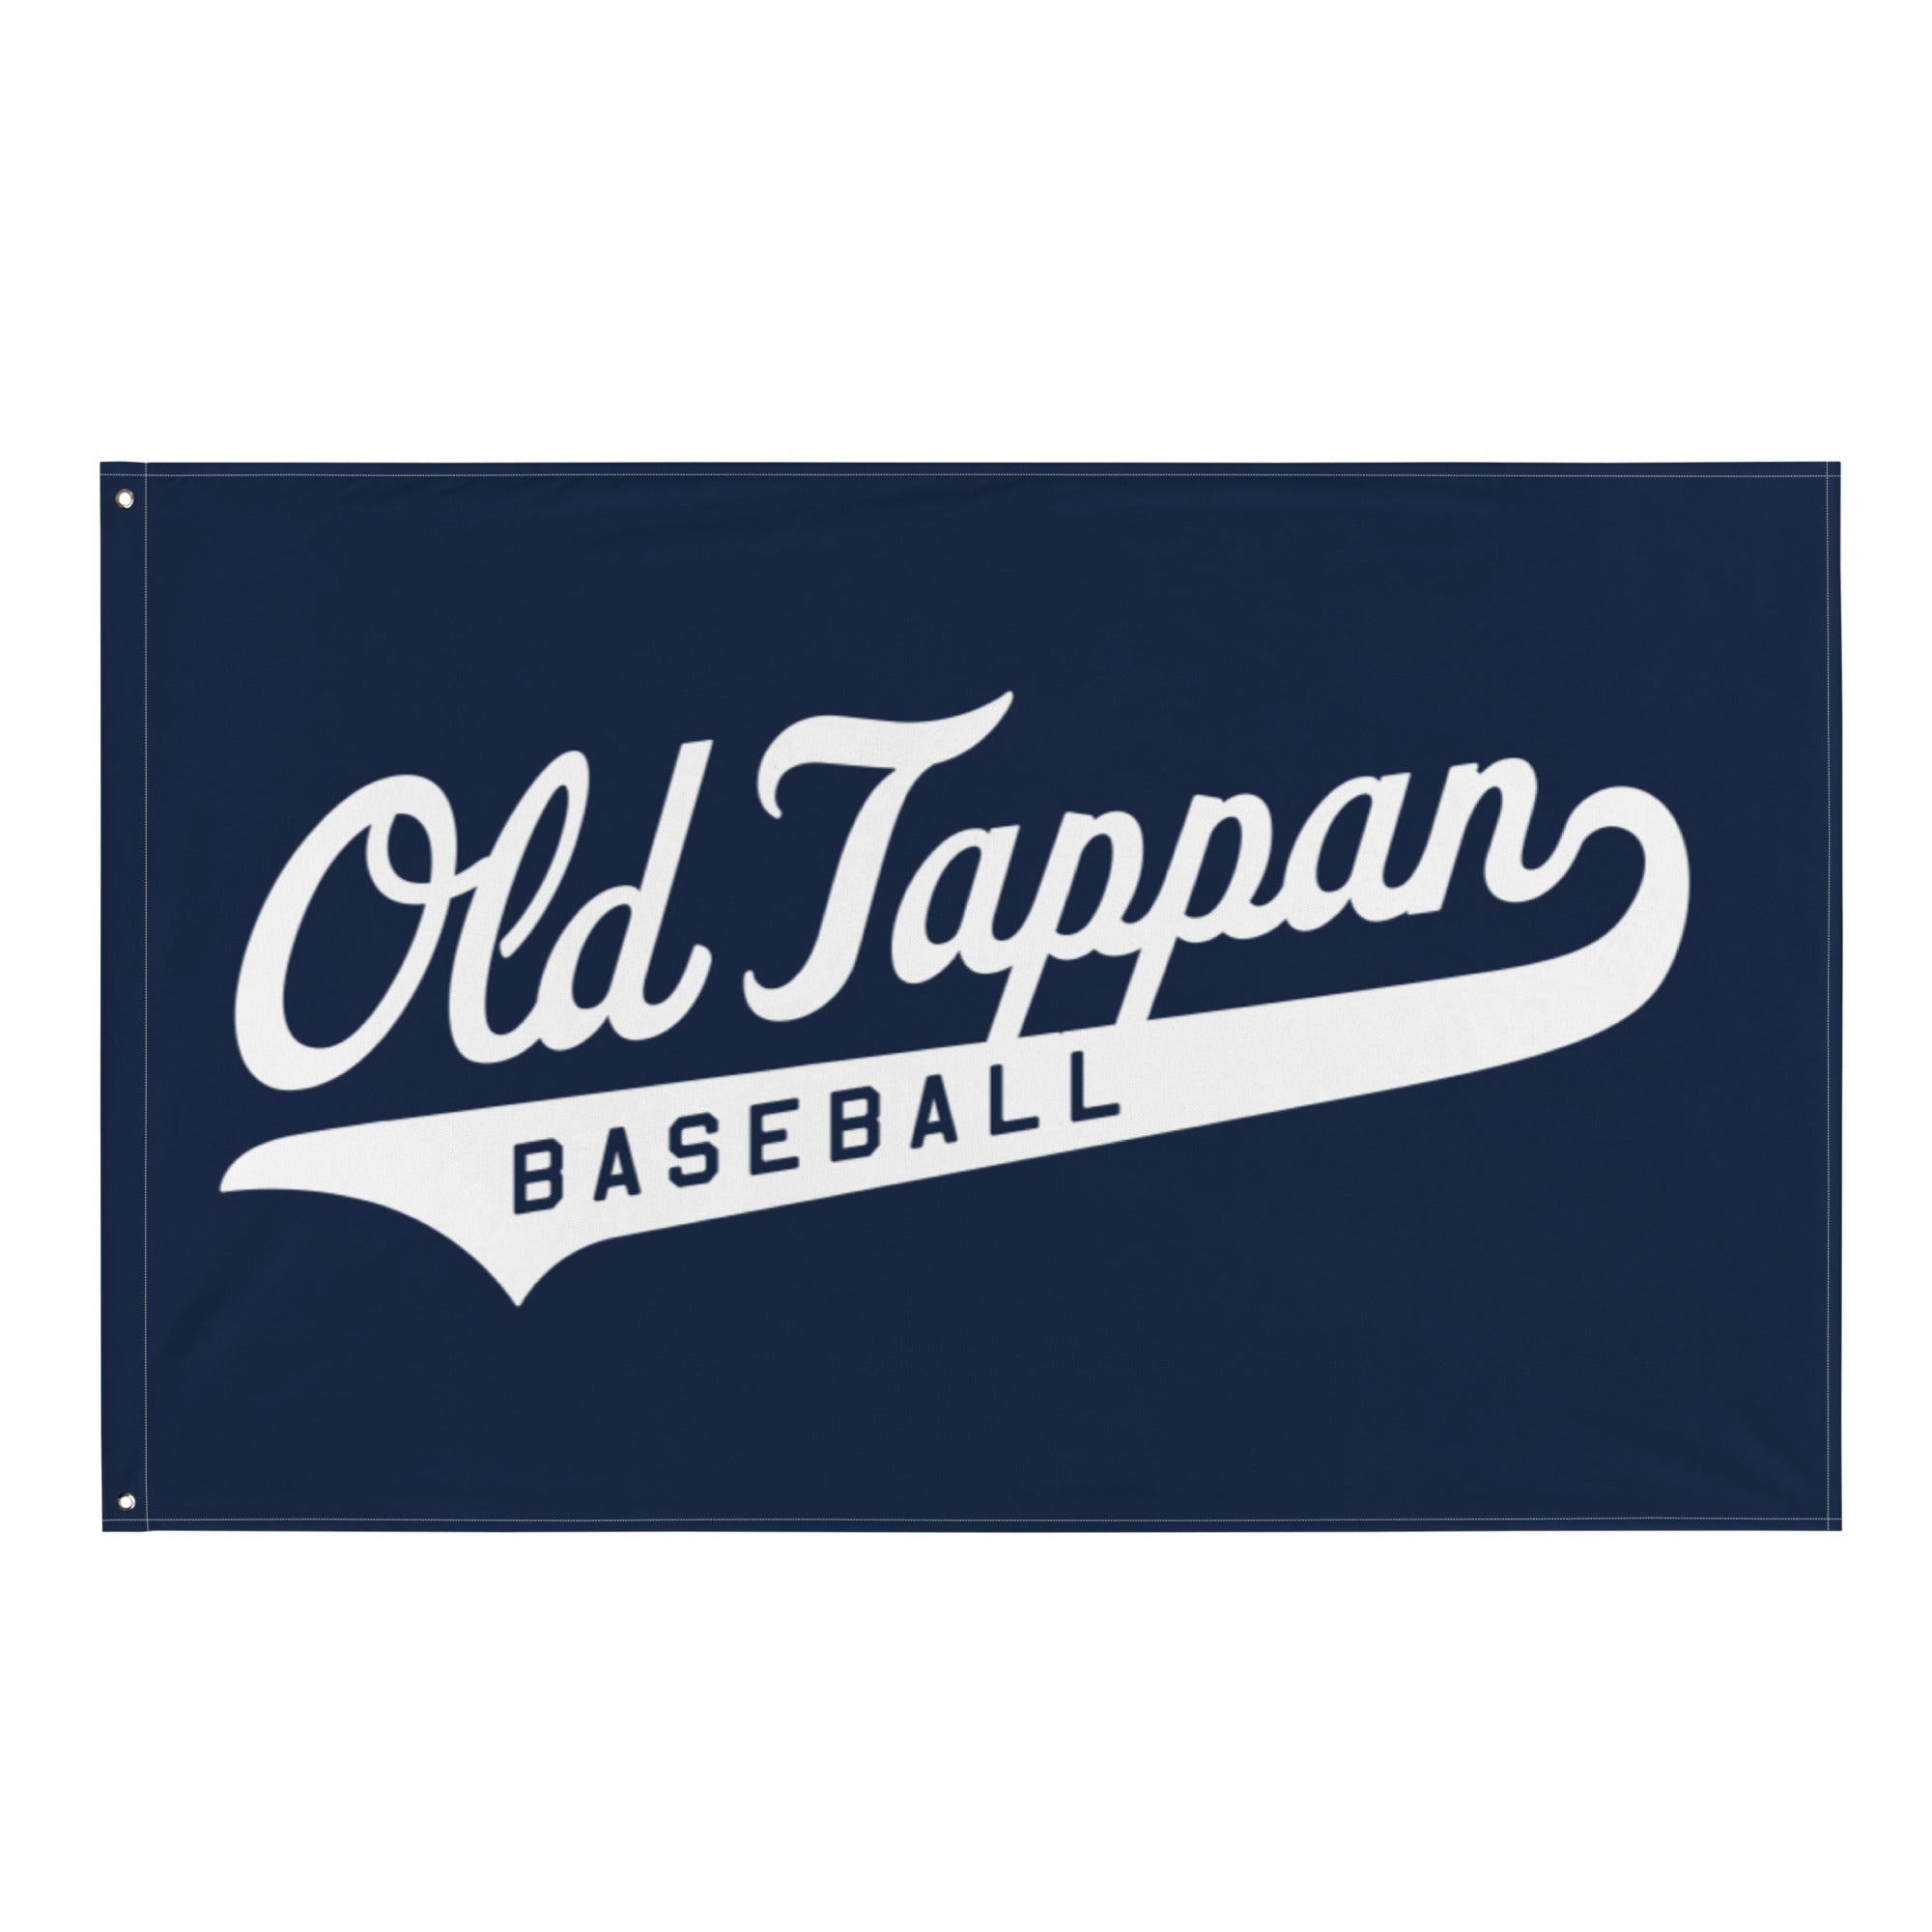 OT Baseball and Softball League - Baseball All-Over Print Flag